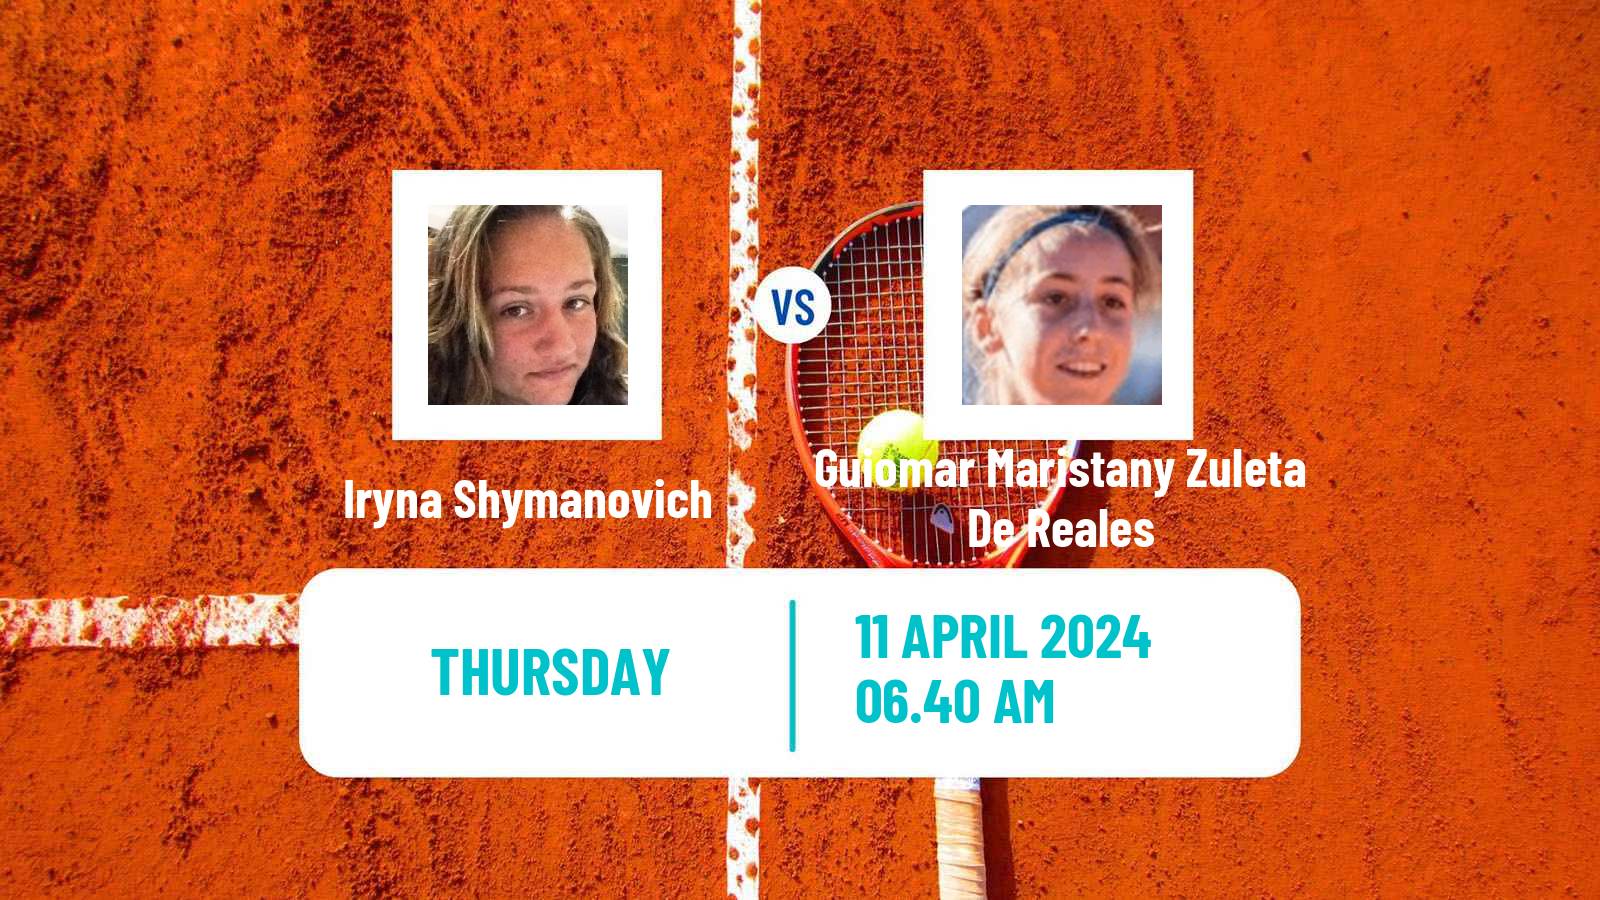 Tennis ITF W100 Zaragoza Women Iryna Shymanovich - Guiomar Maristany Zuleta De Reales